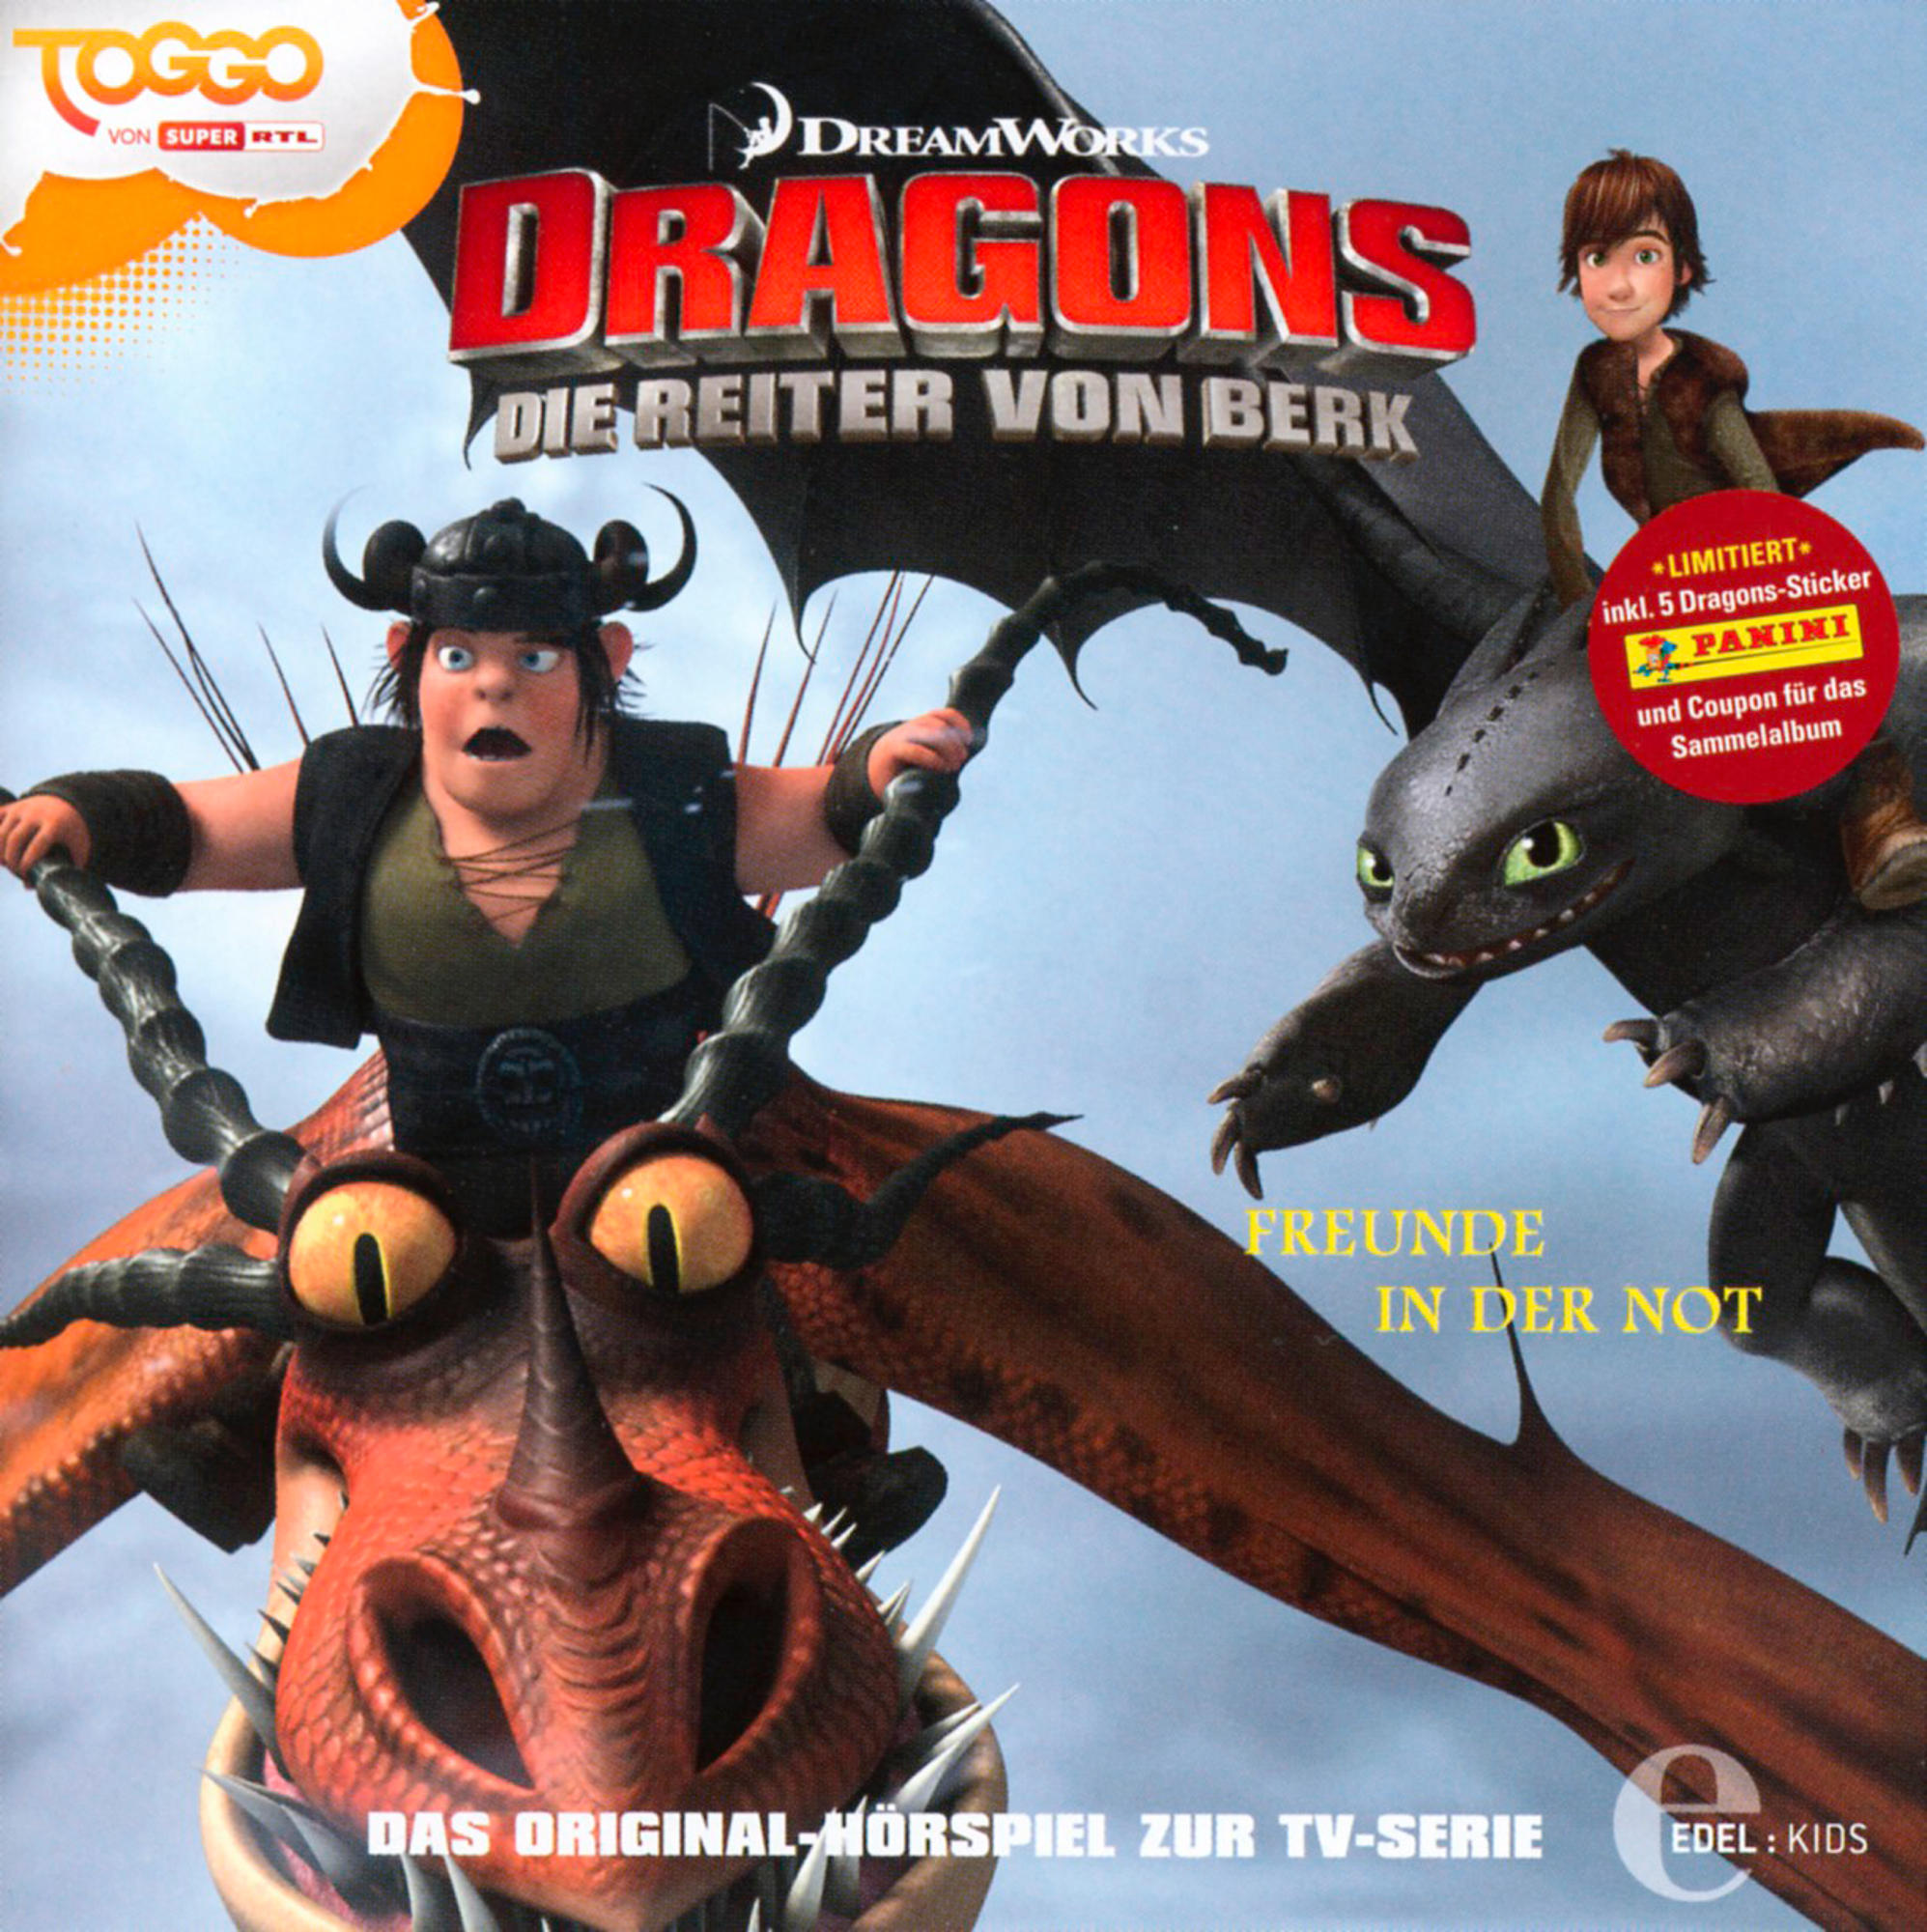 Dragons - Die Von - (8) Freunde (CD) - Reiter Berk in Not der